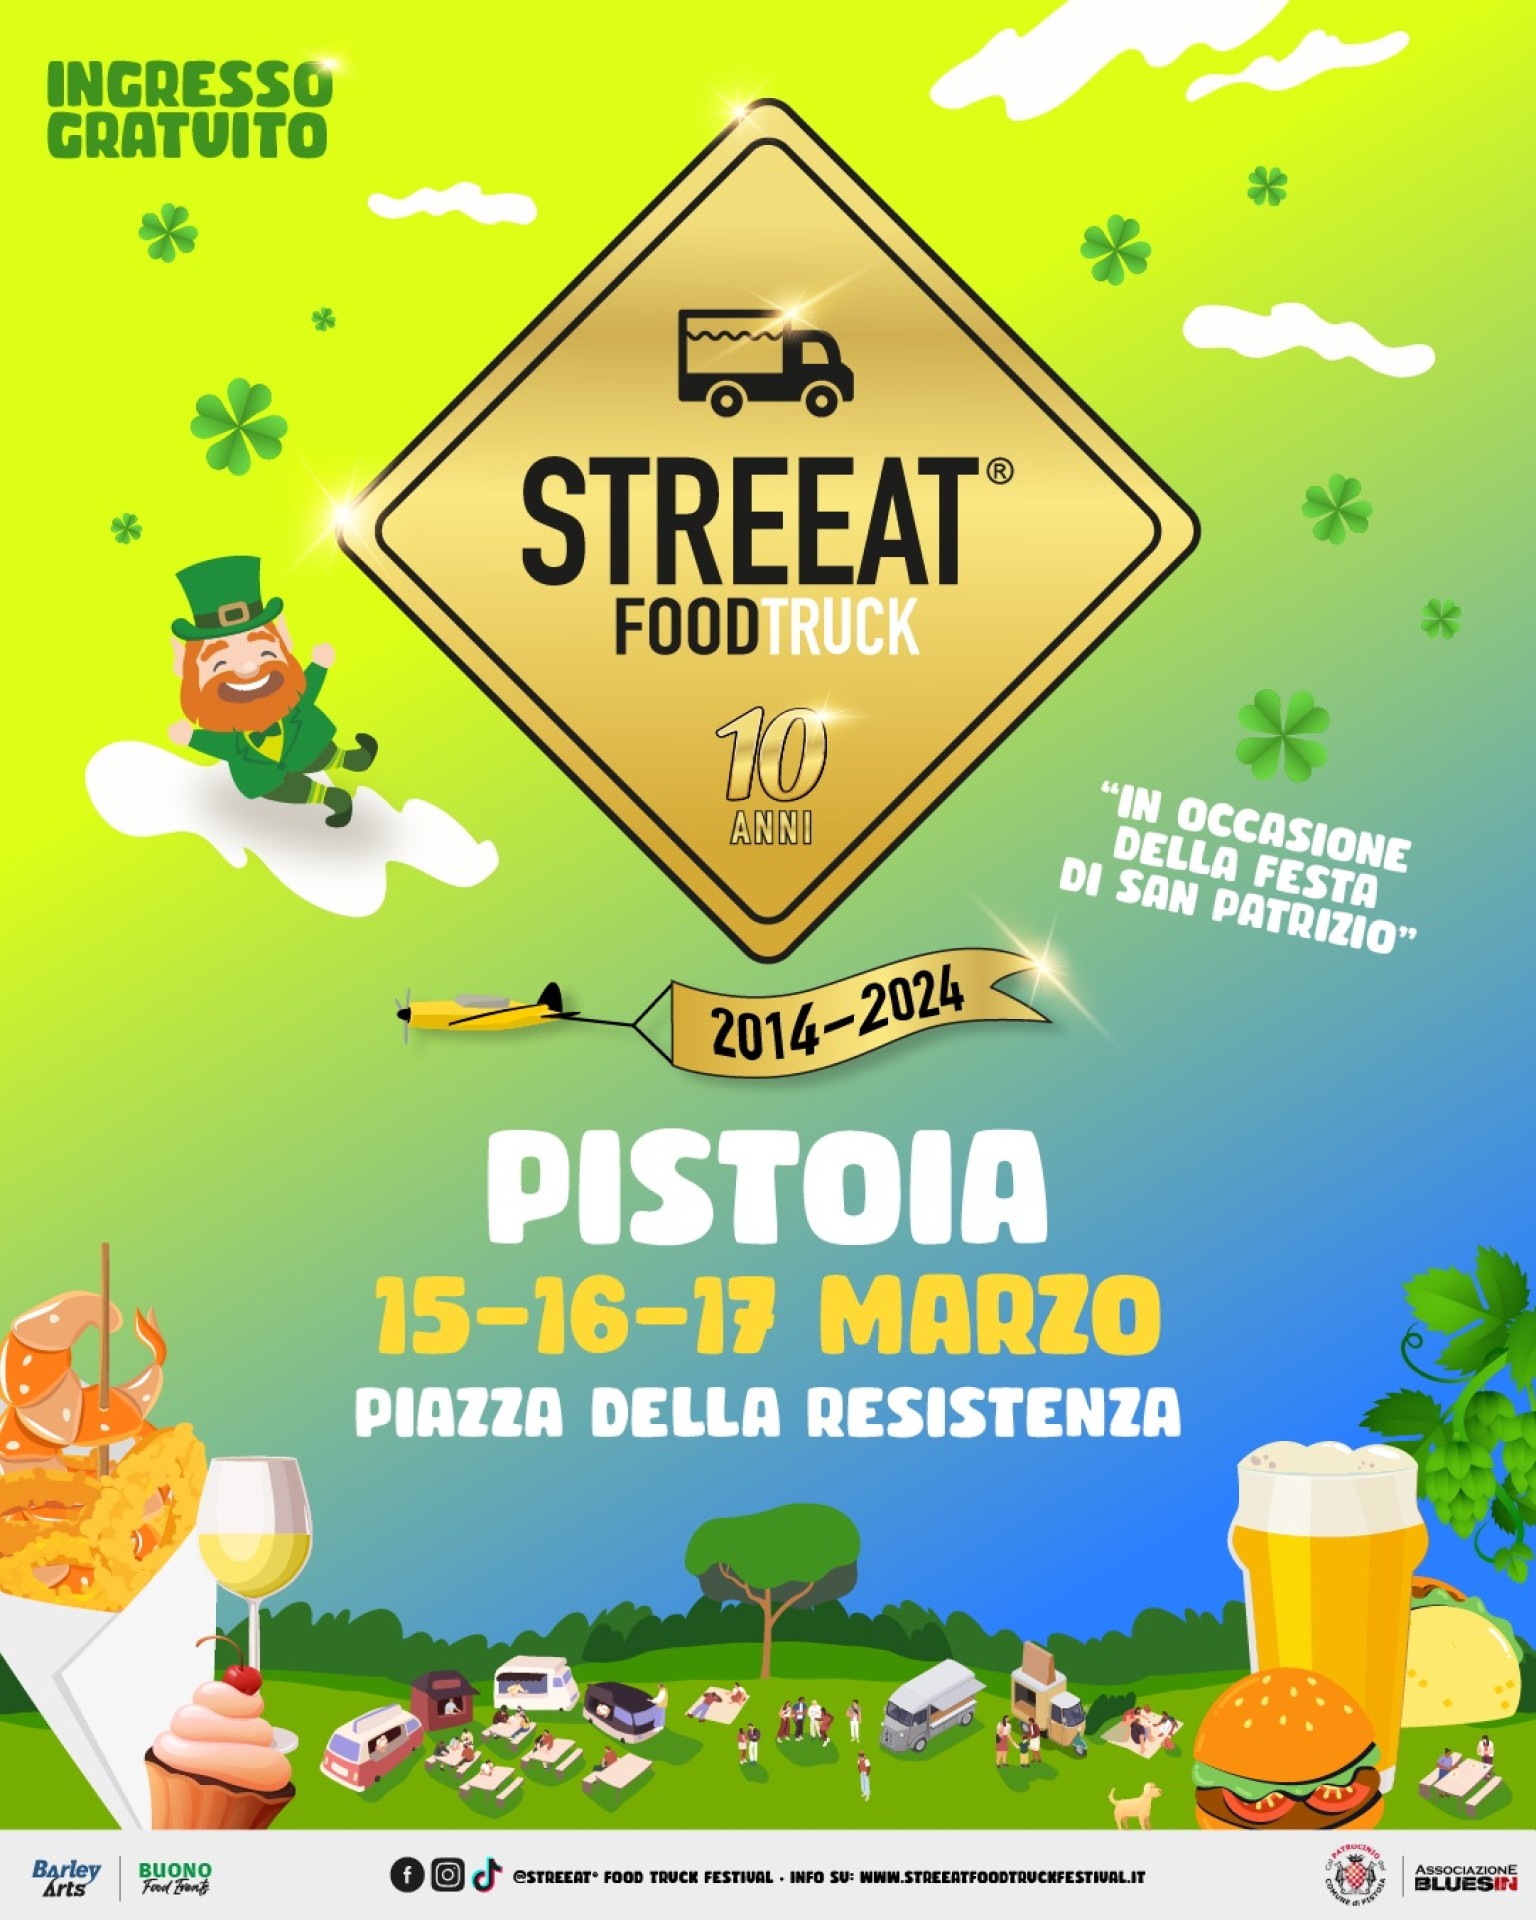 1° STREEAT® FOOD TRUCK FESTIVAL - PISTOIA